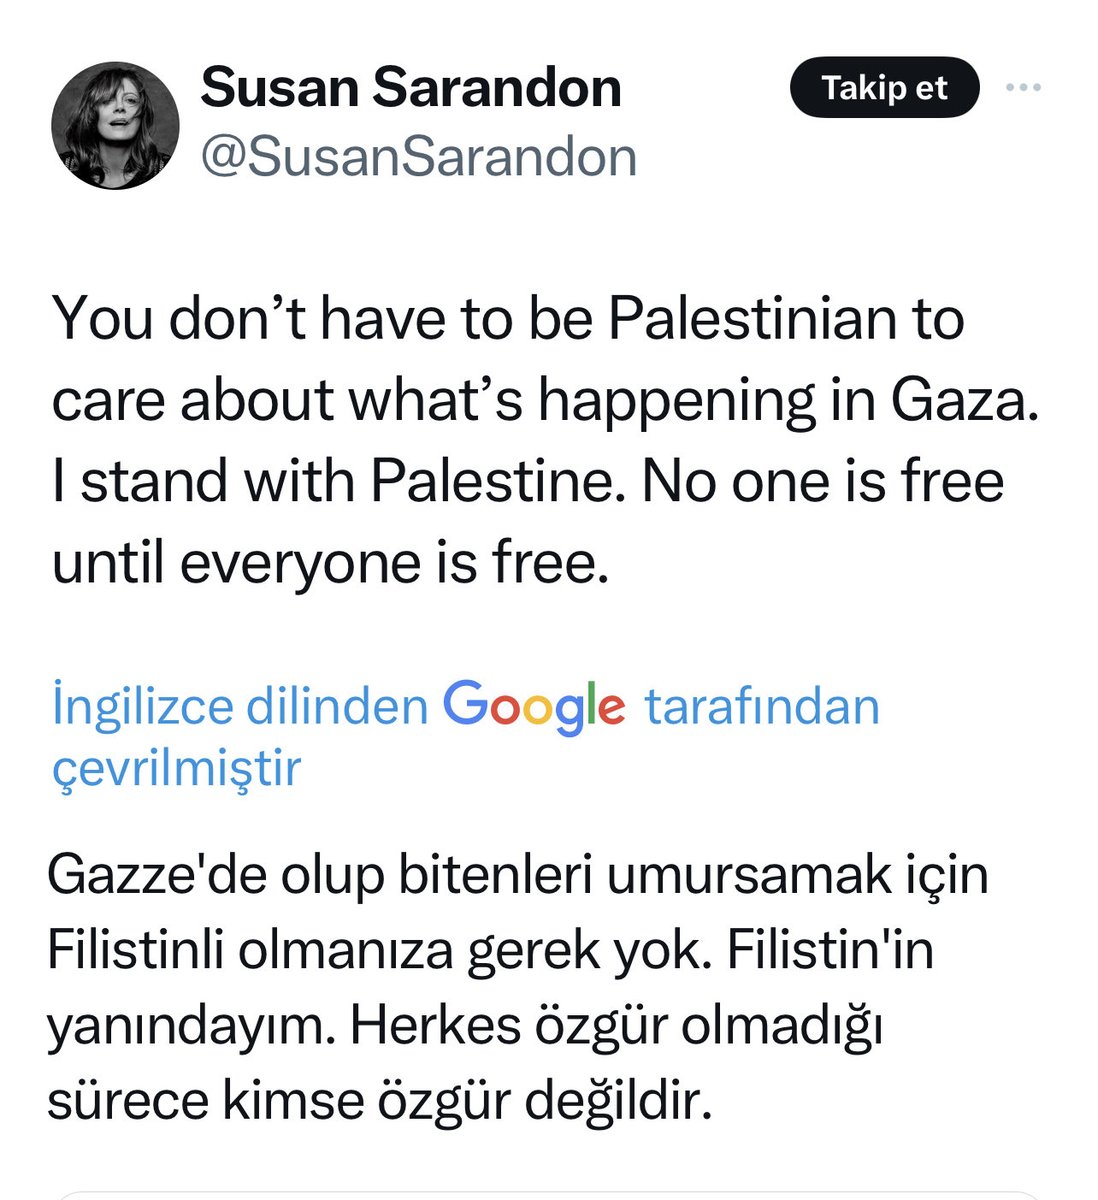 Oscar ödüllü oyuncu Susan Sarandon:Gazze’de olup bitenleri umursamak için Filistinli olmanıza gerek yok.👏👏 İsrail’e iki çift laf edemeyen bizdeki oyuncu tayfasına bak. ABD Başkanını parmağında oynatan İsrail lobisine rağmen insanlığın yanında saf tutan şu cesur kadına bak..